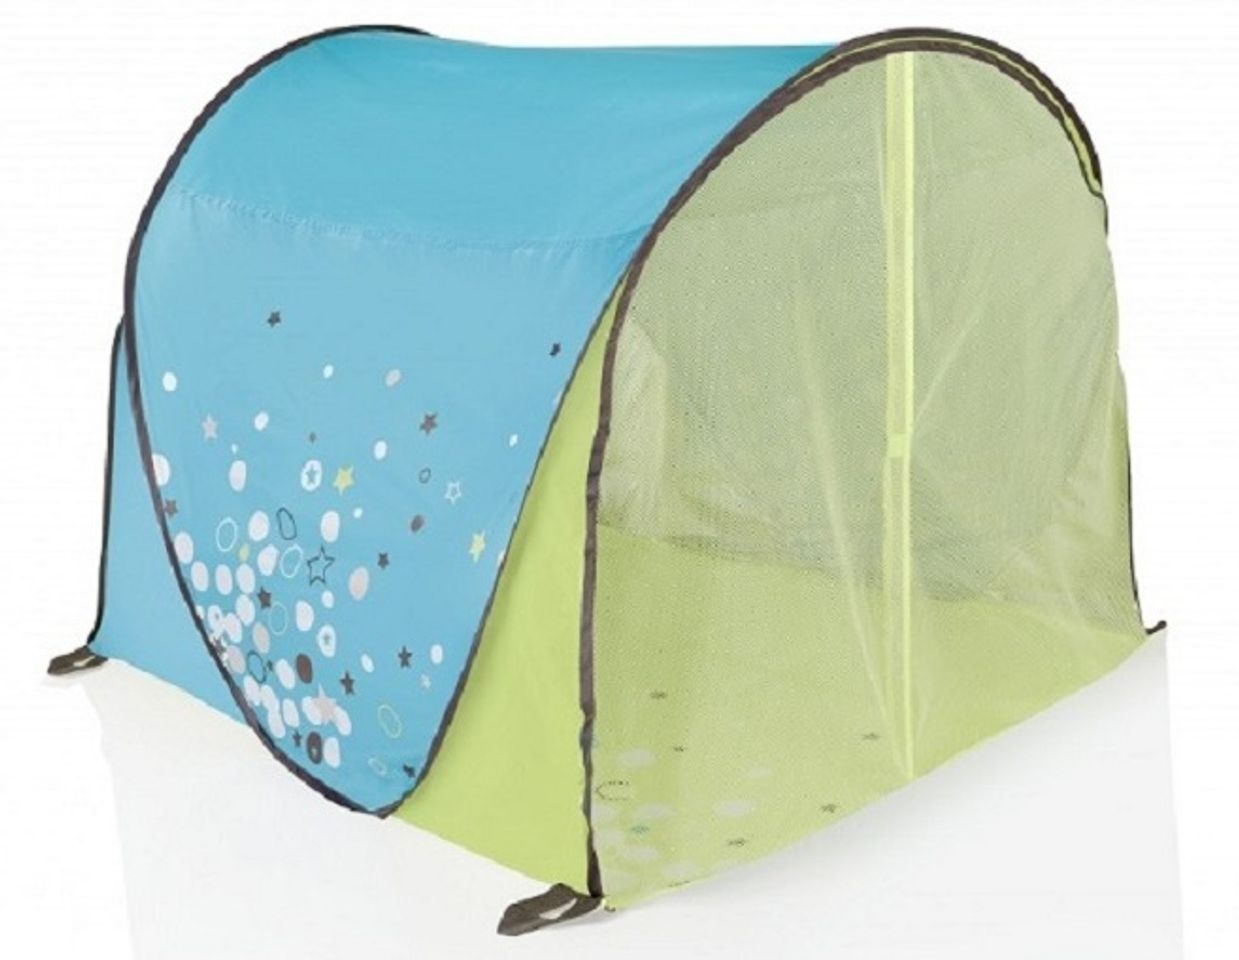 Lều chơi chống tia UV của Babymoov Pháp là lều du lịch rất tiện dụng, cực kỳ an toàn cho cả gia đình